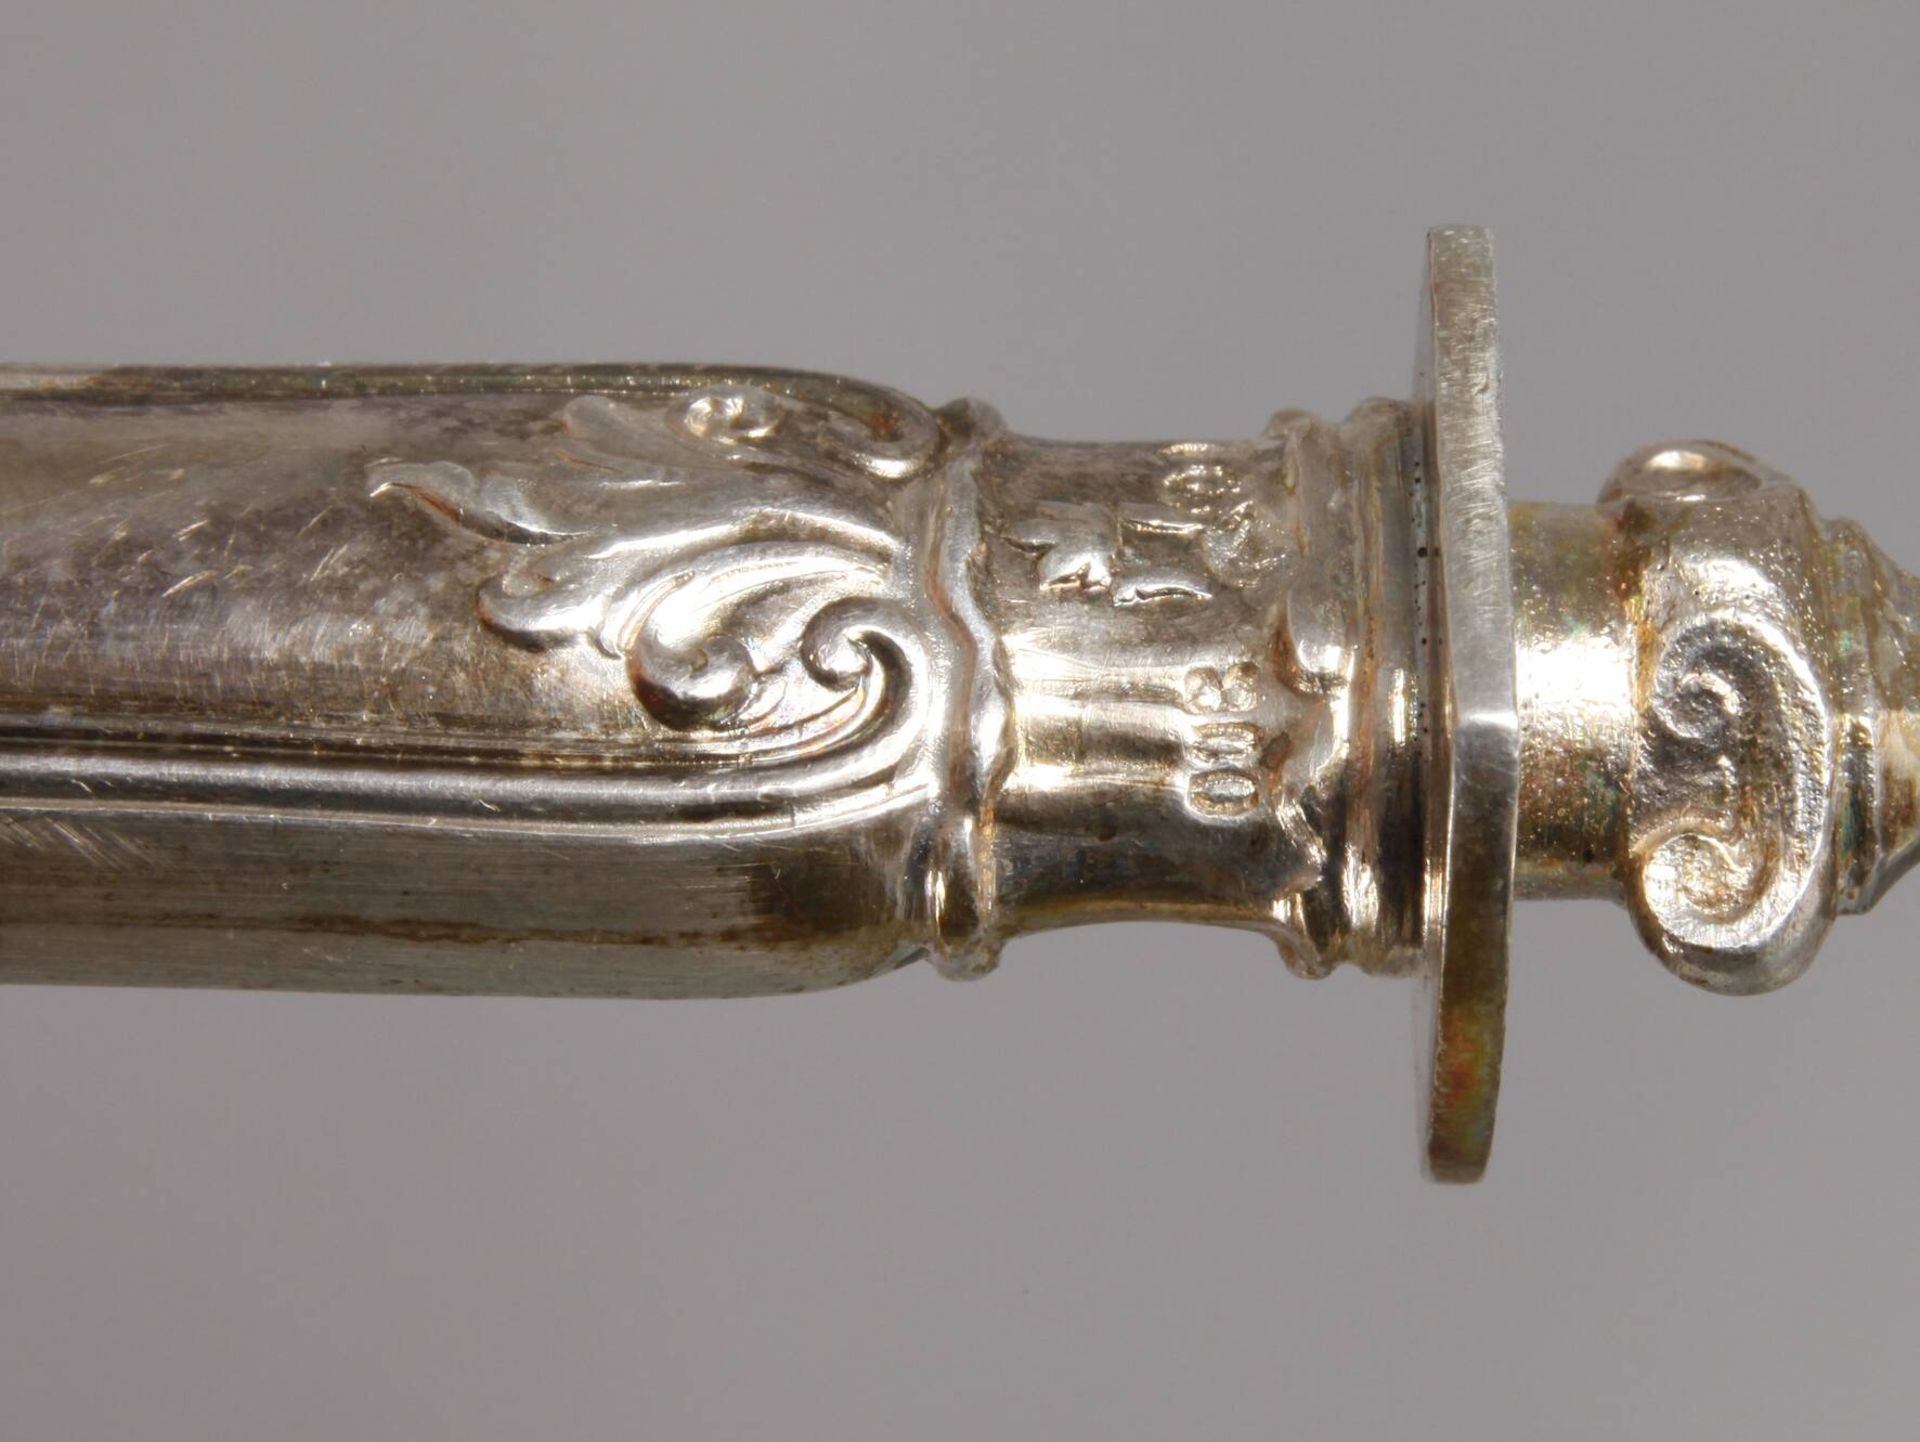 Silber Tortenheber aus dem Besitz Kaiser Wilhelm II. von Preußendatiert 1900, Silberstempel - Image 5 of 6